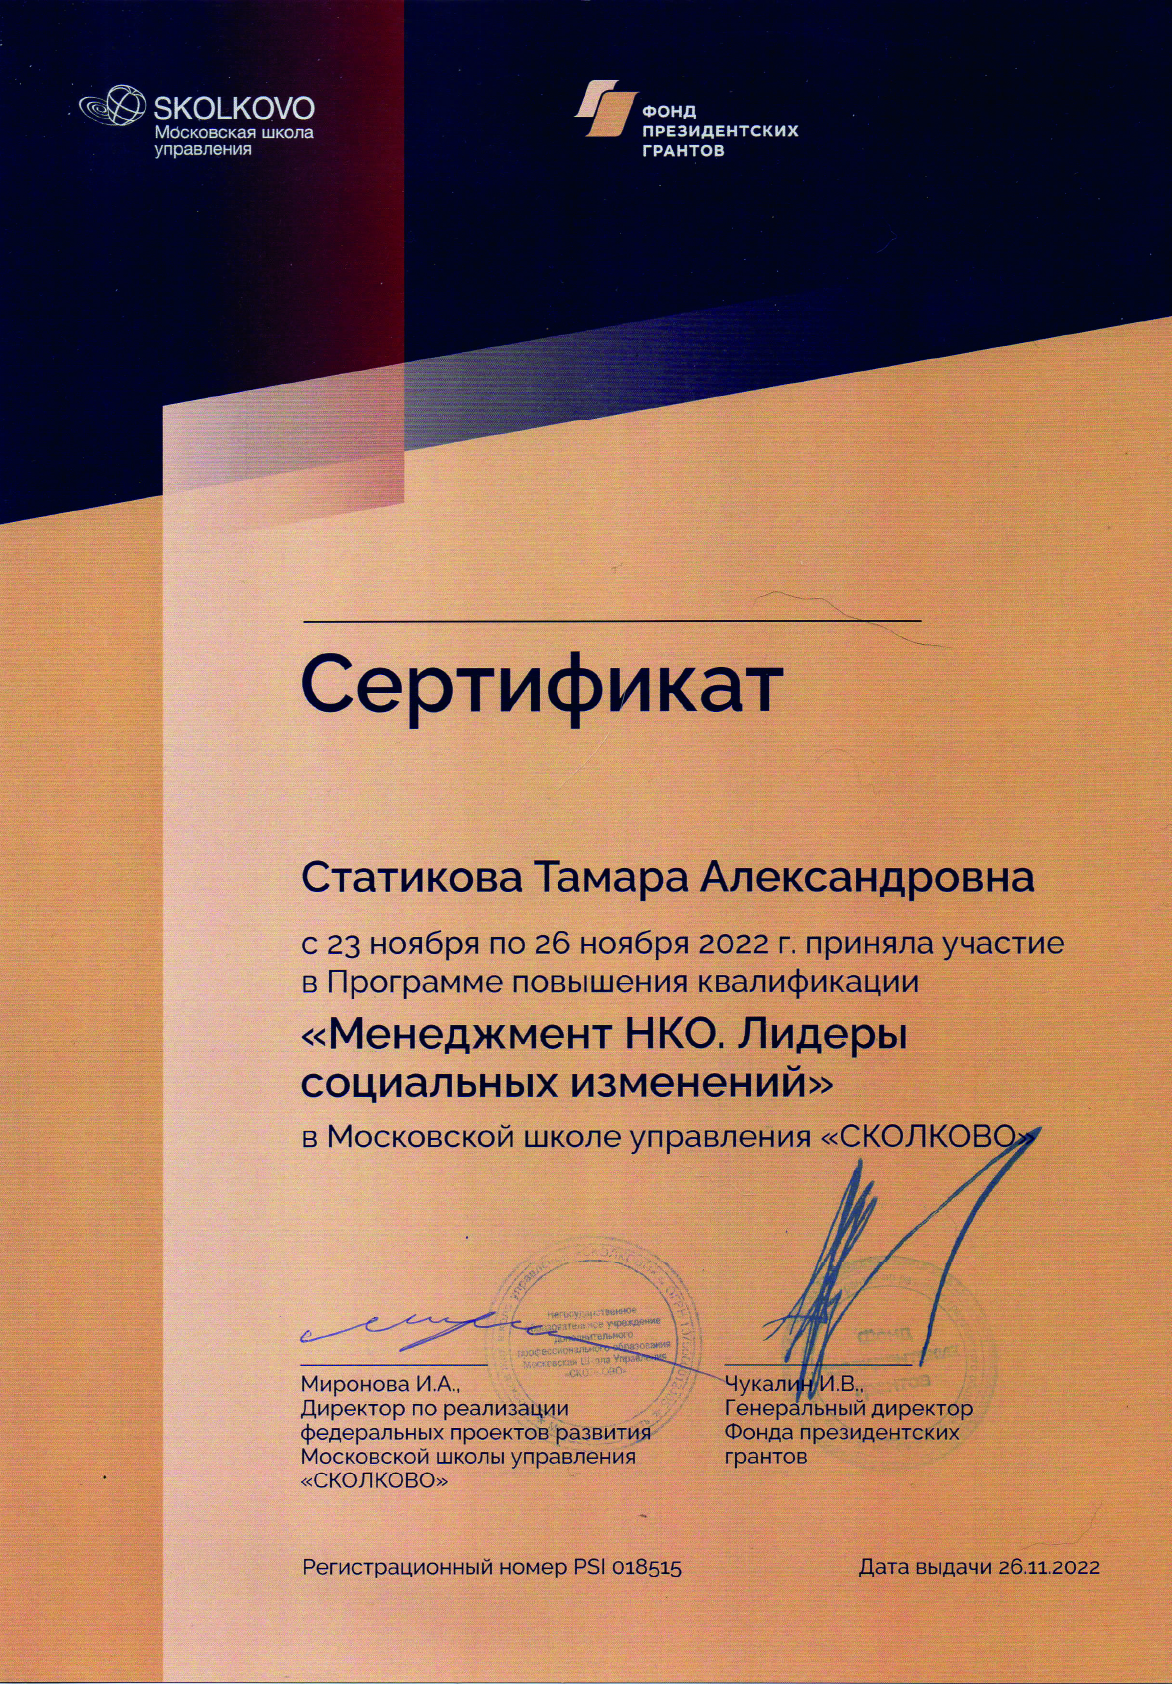 Сертификат Сколково 2022